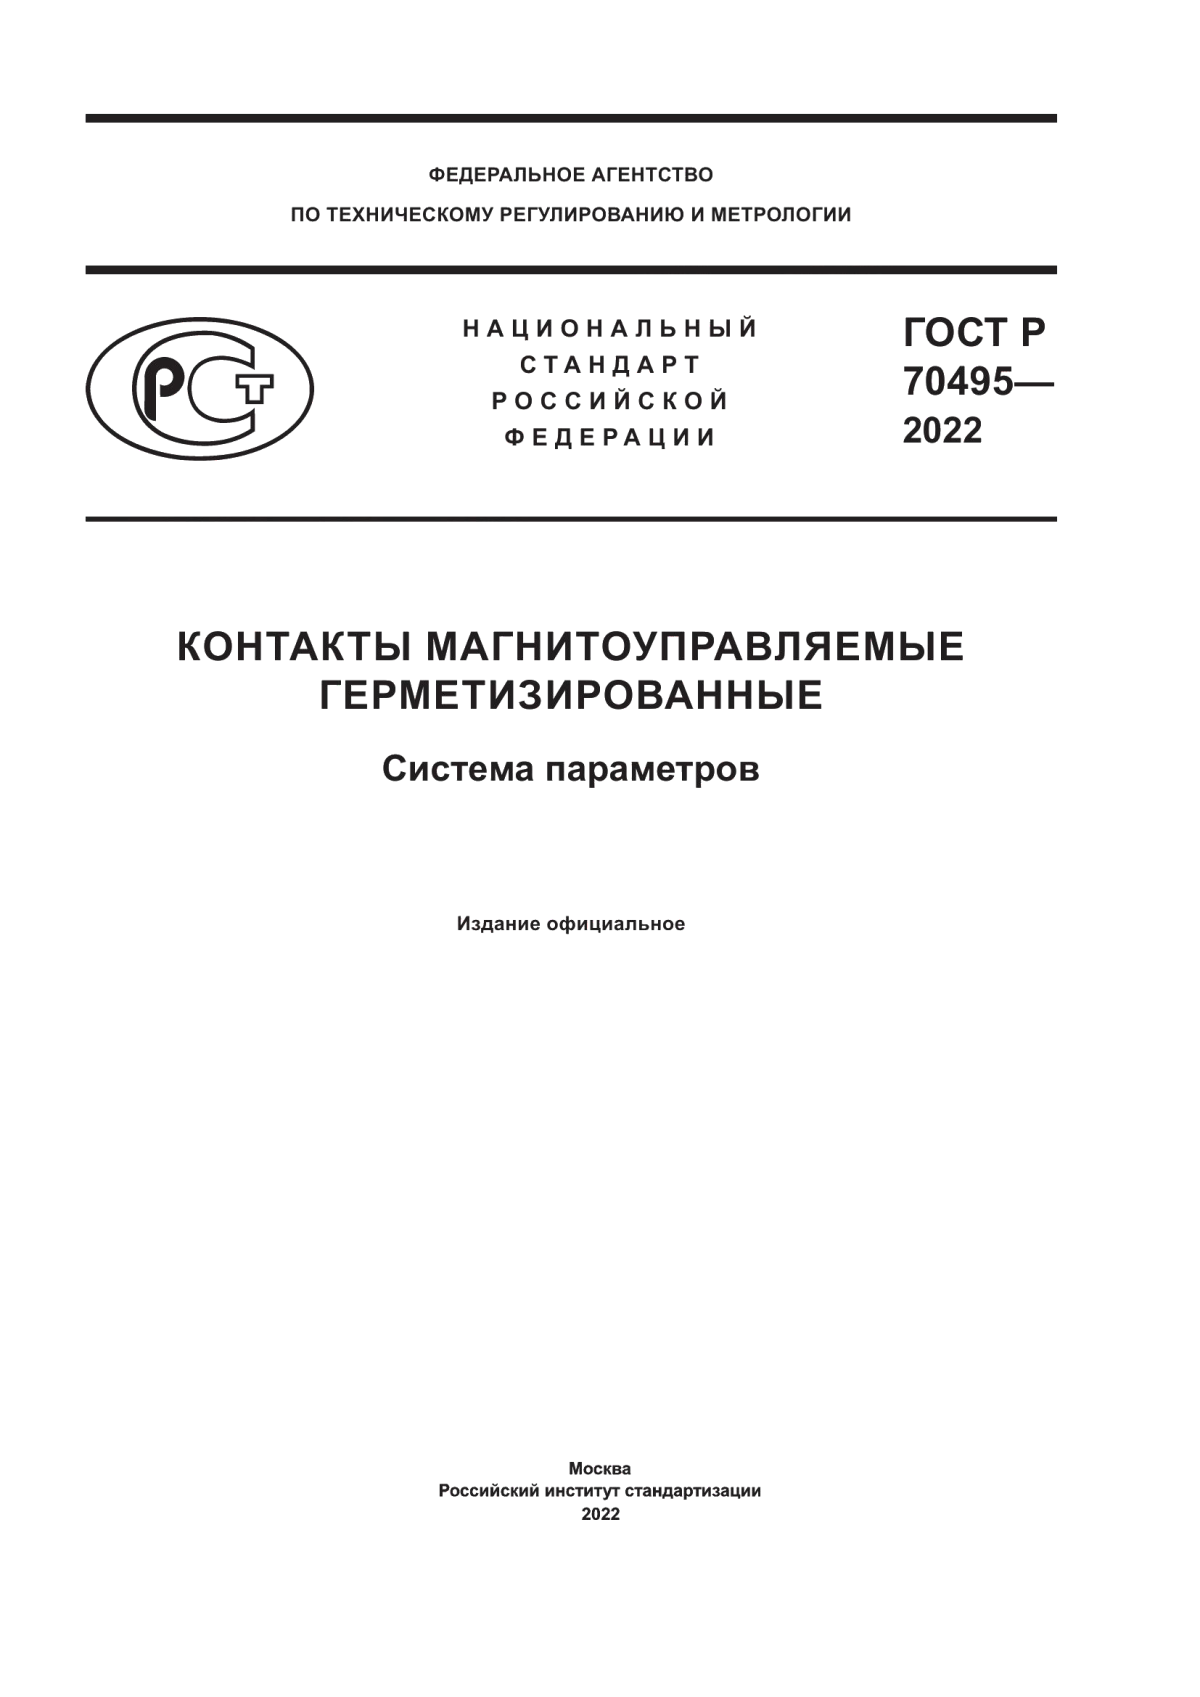 ГОСТ Р 70495-2022 Контакты магнитоуправляемые герметизированные. Система параметров